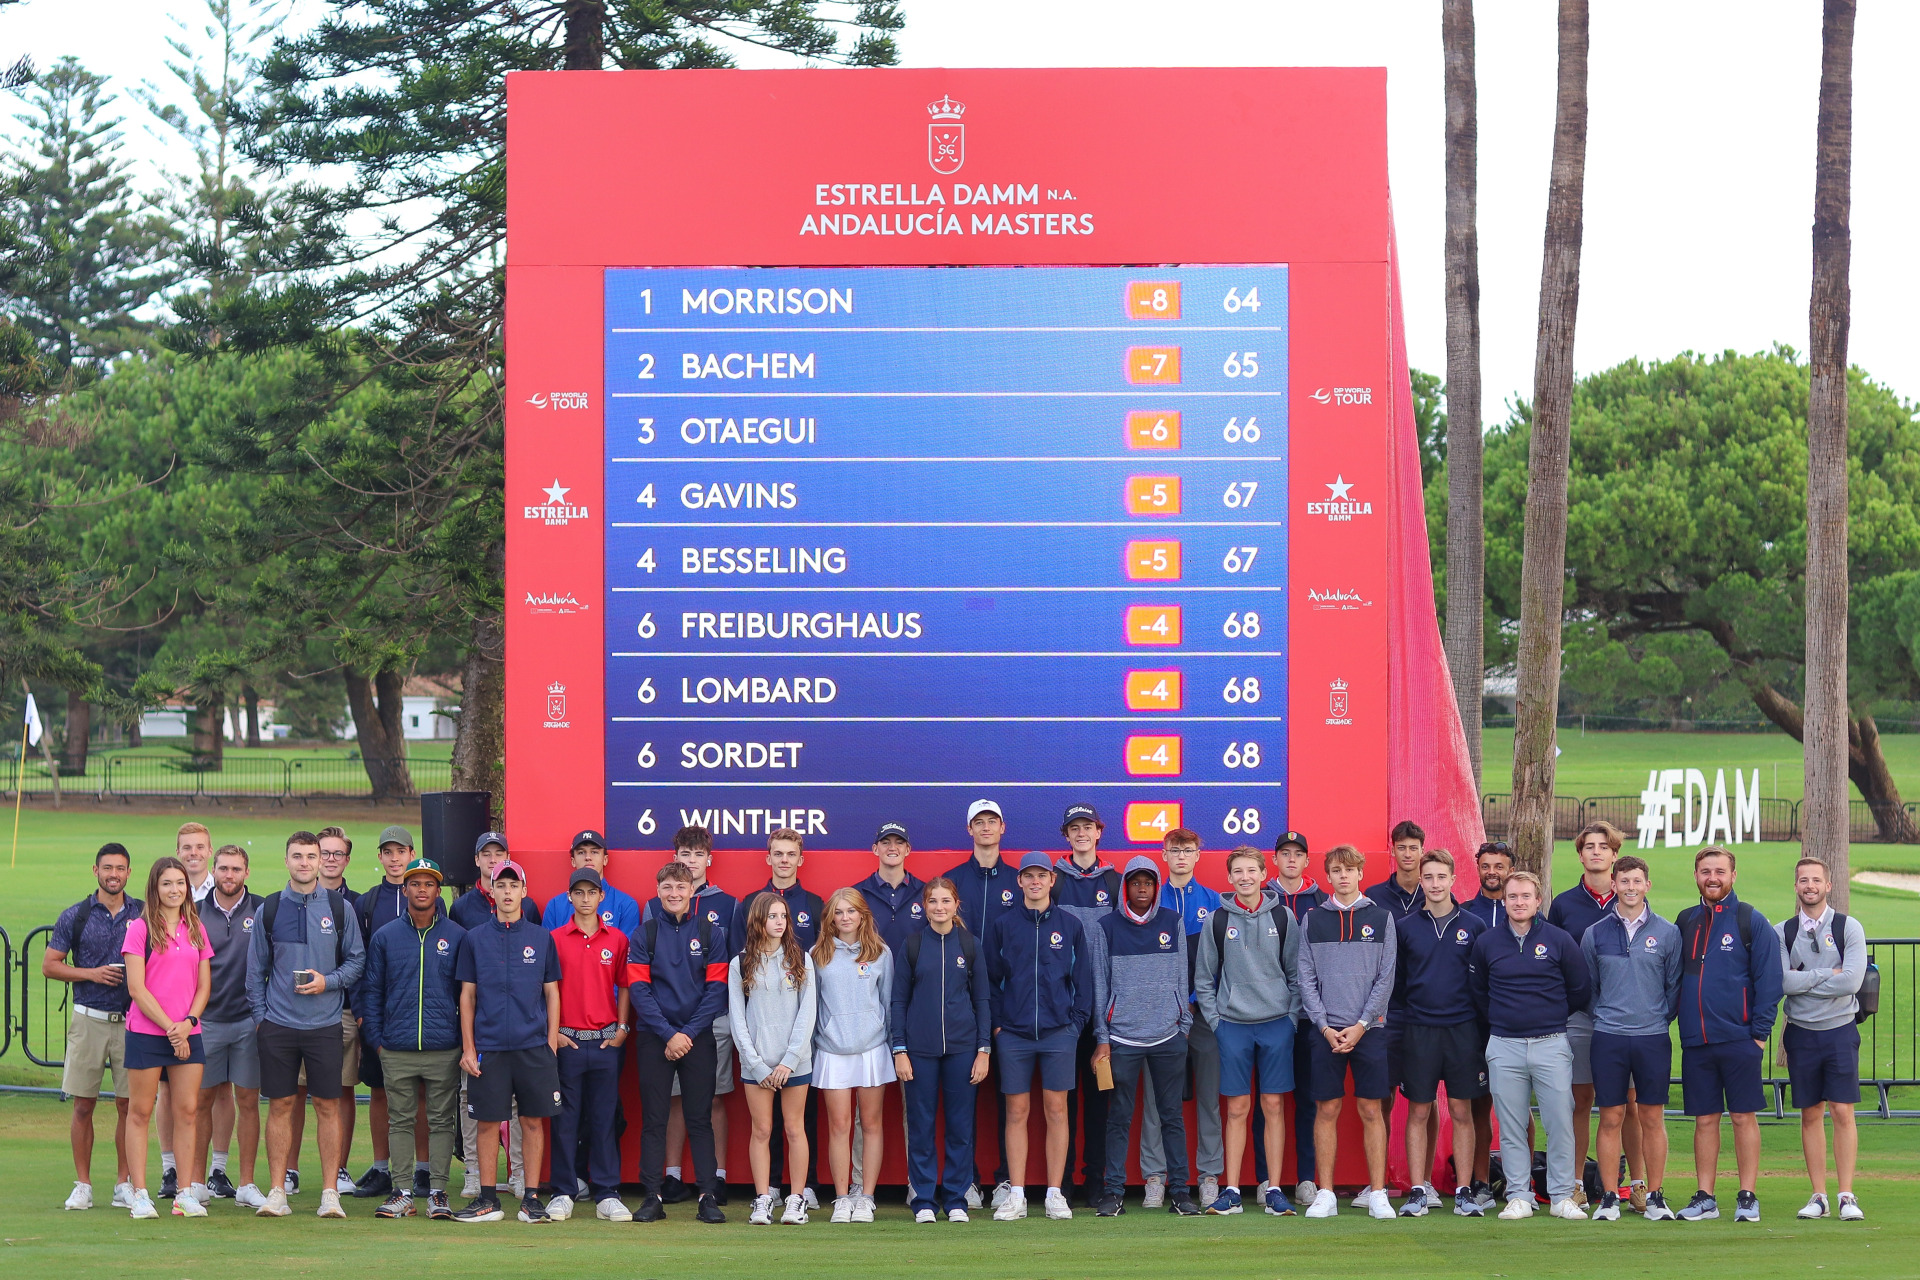 Jason Floyd Golf Academy, Estrella Damm Andalucia Masters 2023